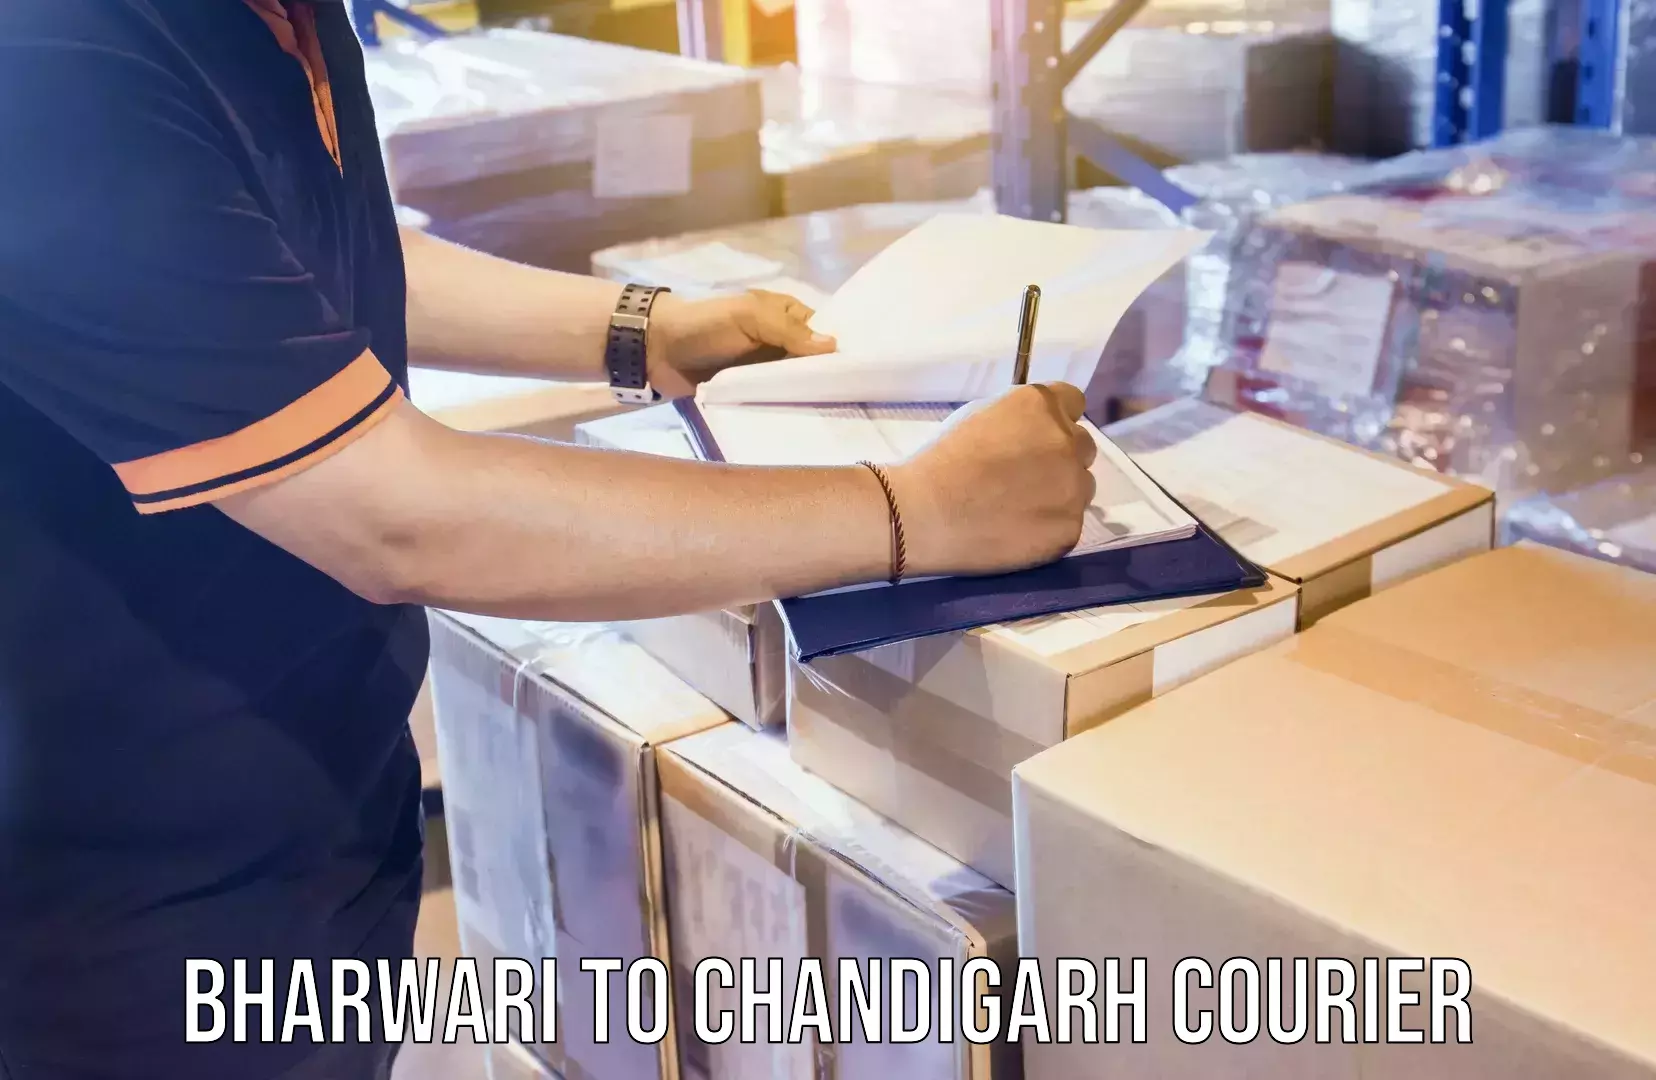 Tailored freight services Bharwari to Chandigarh